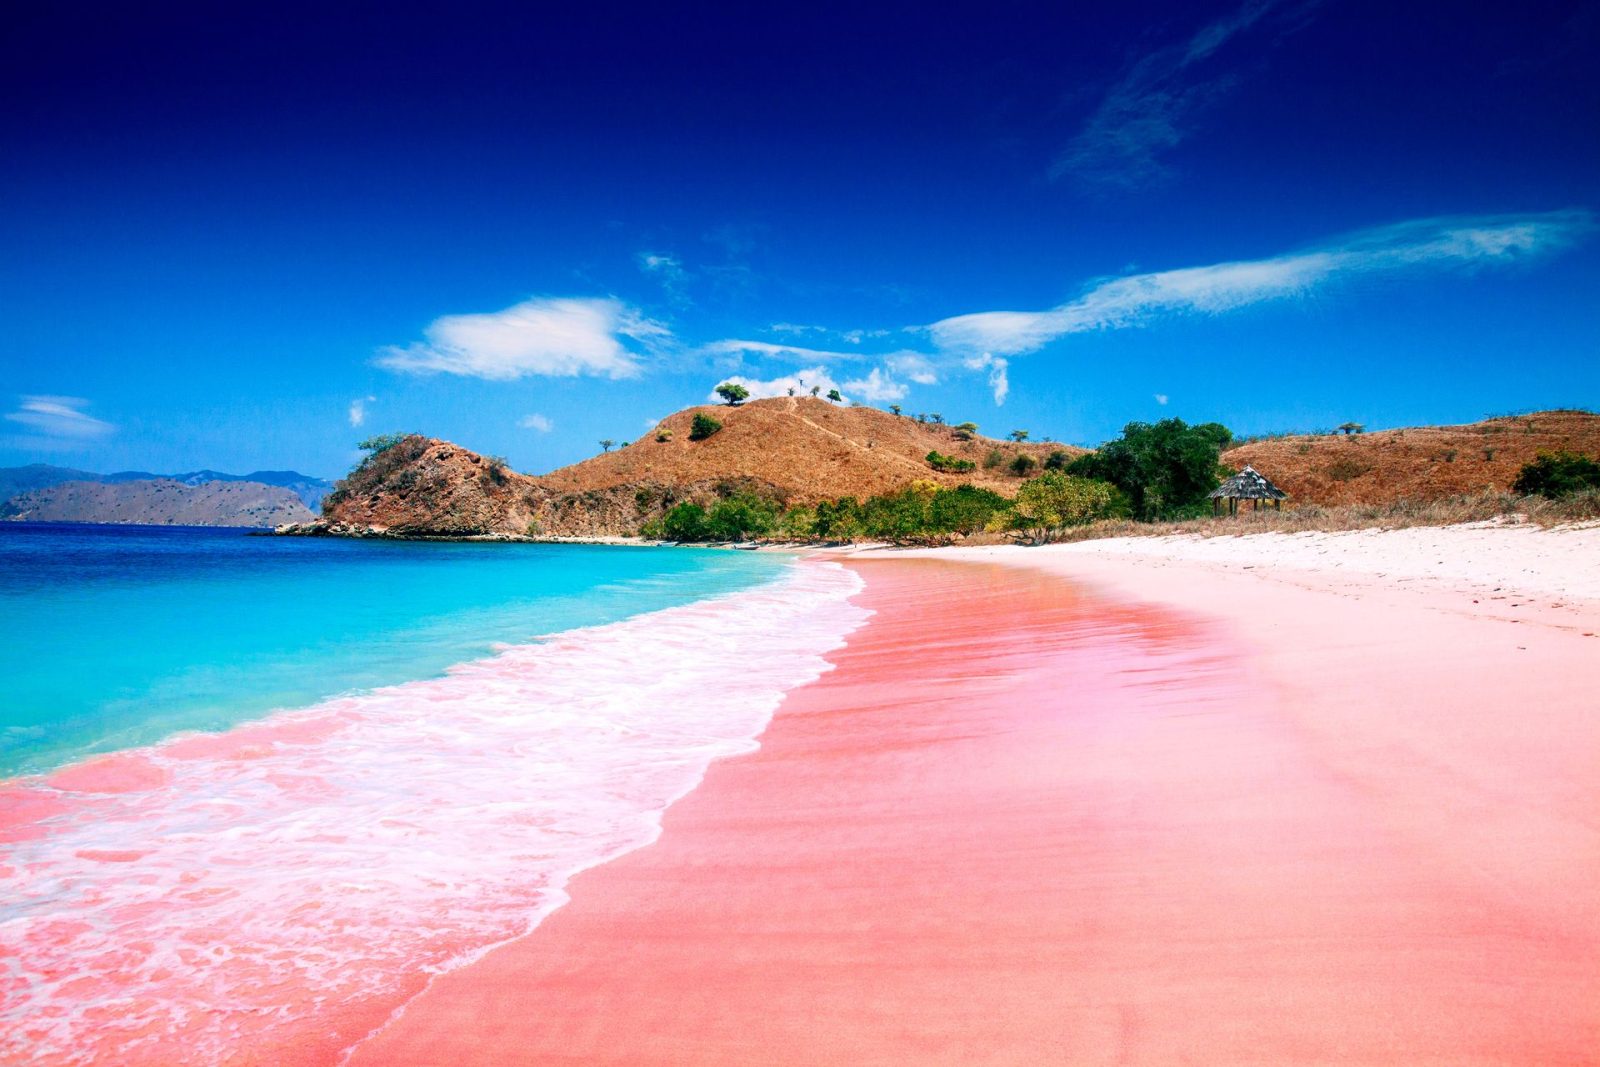 5 самых красивых розовых пляжей
Ломбок